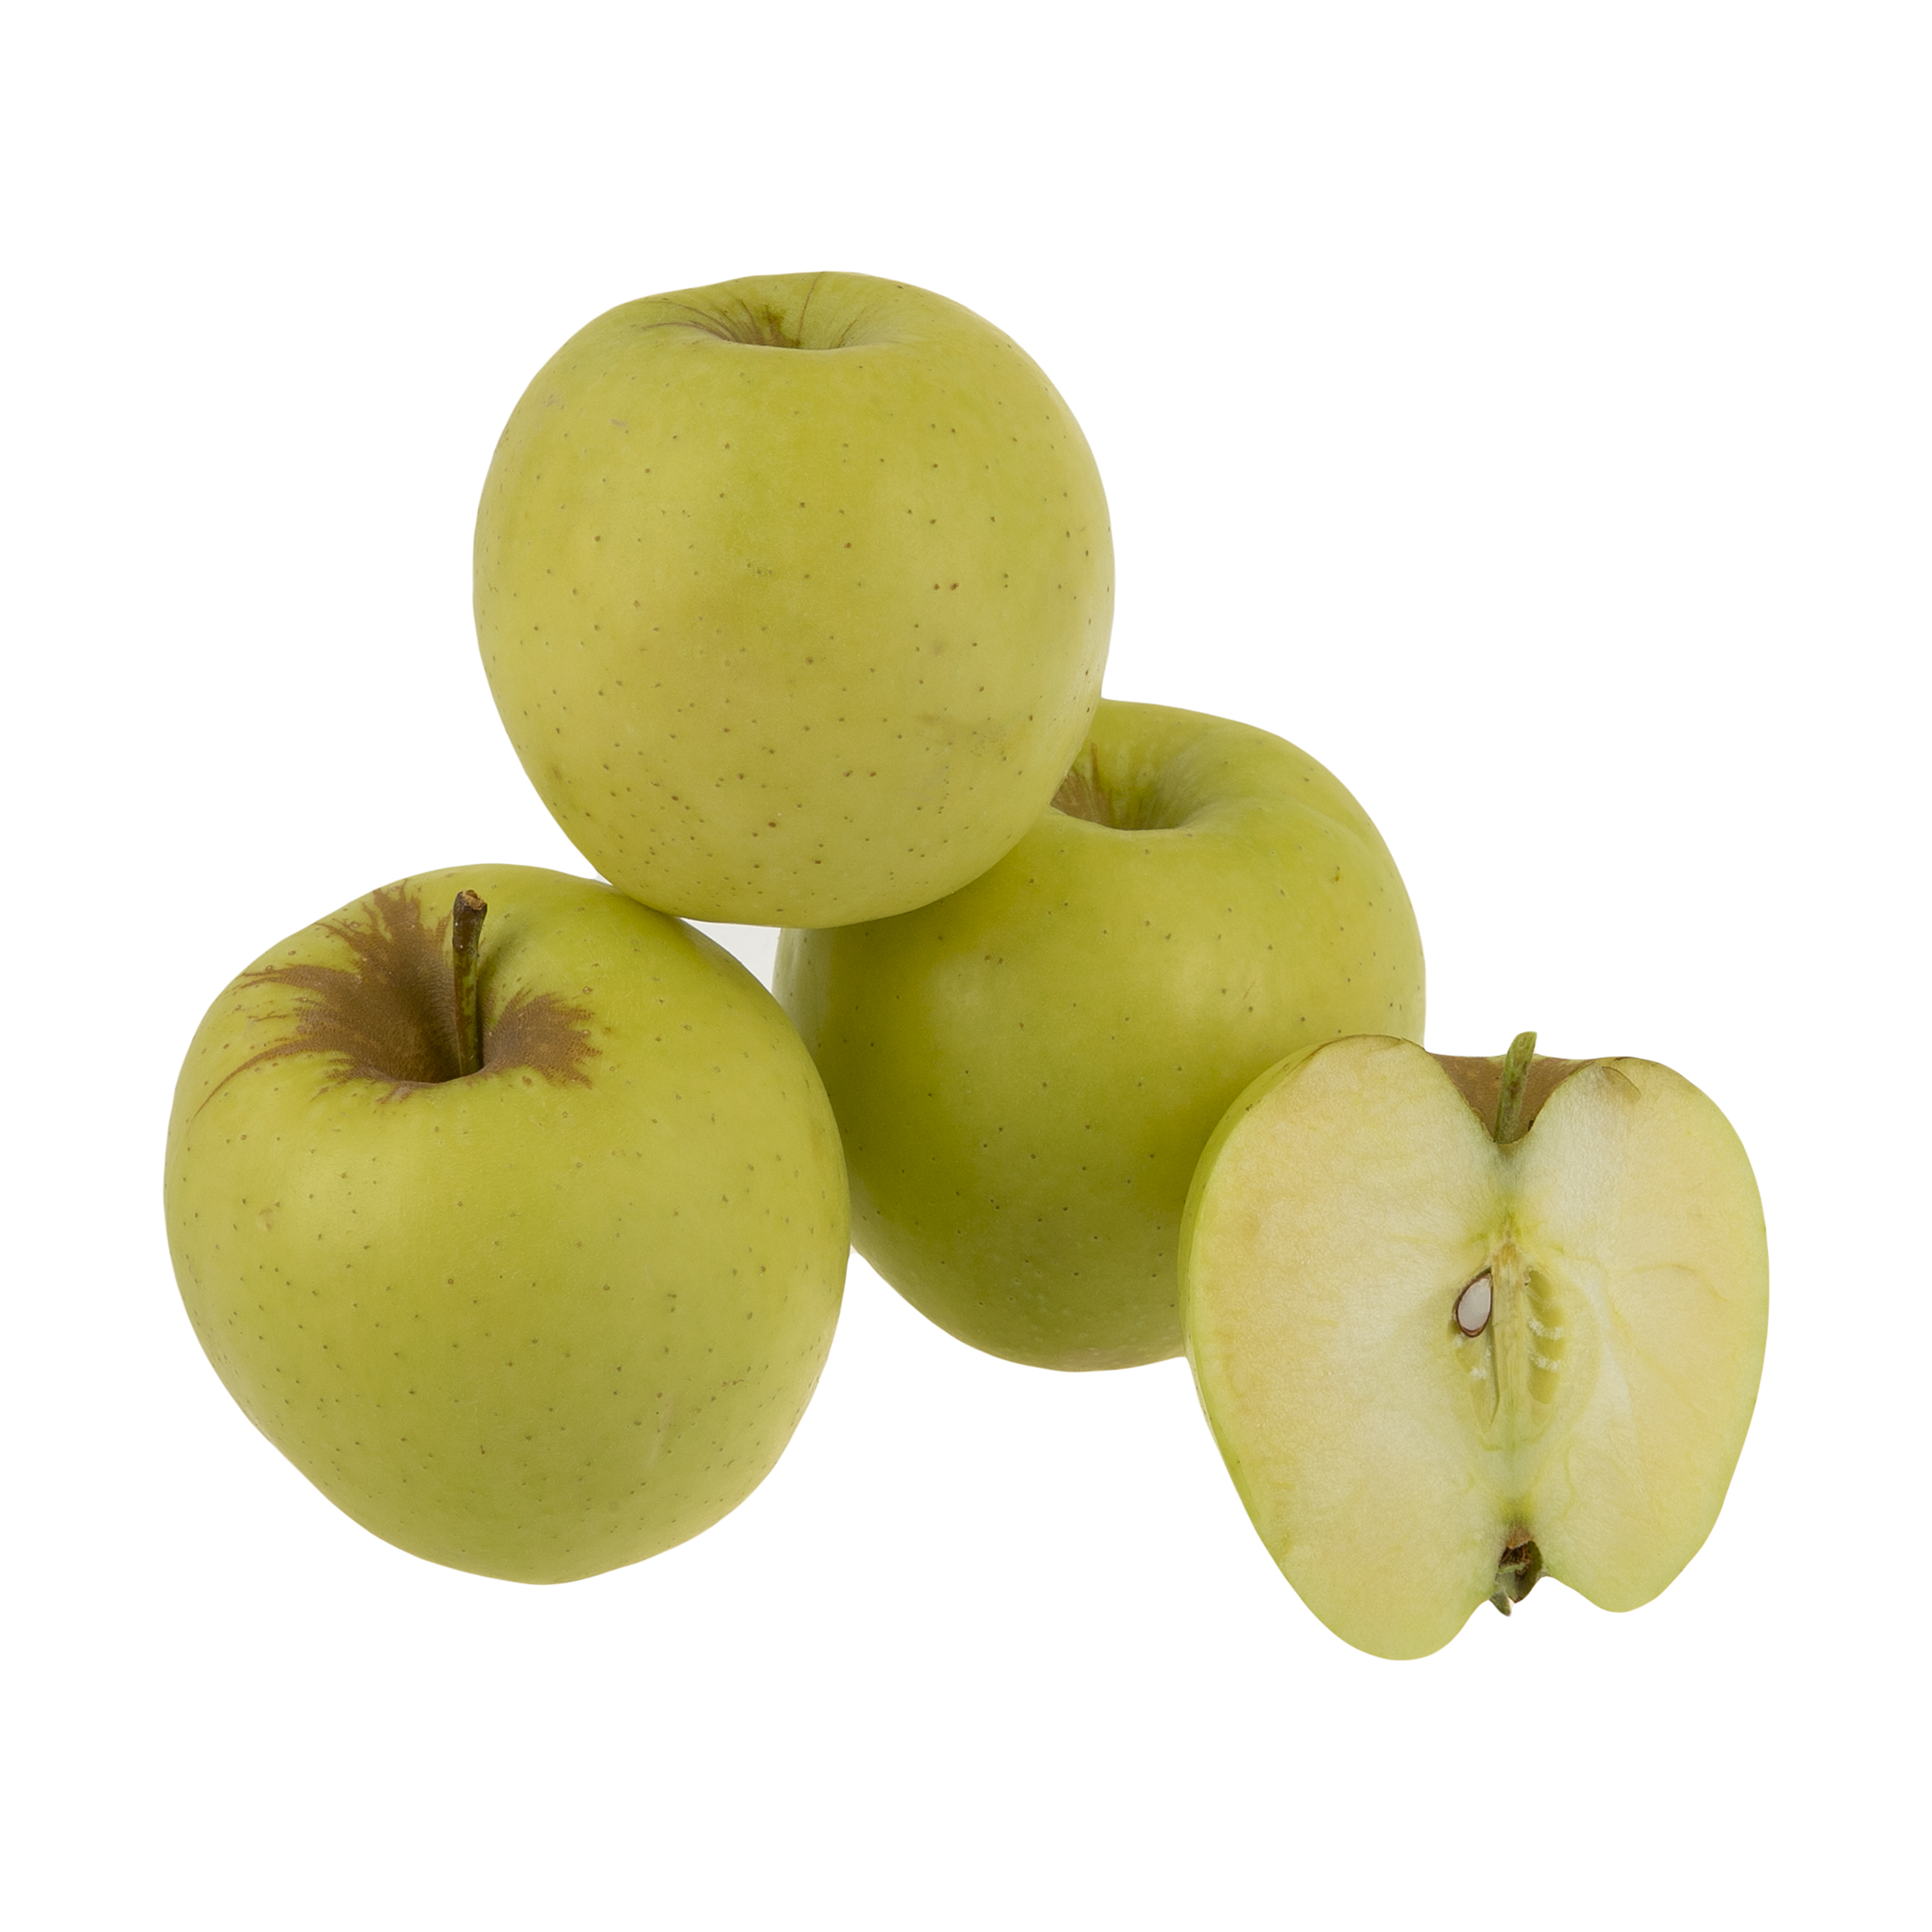 سیب اقتصادی میوکات - 1 کیلوگرم